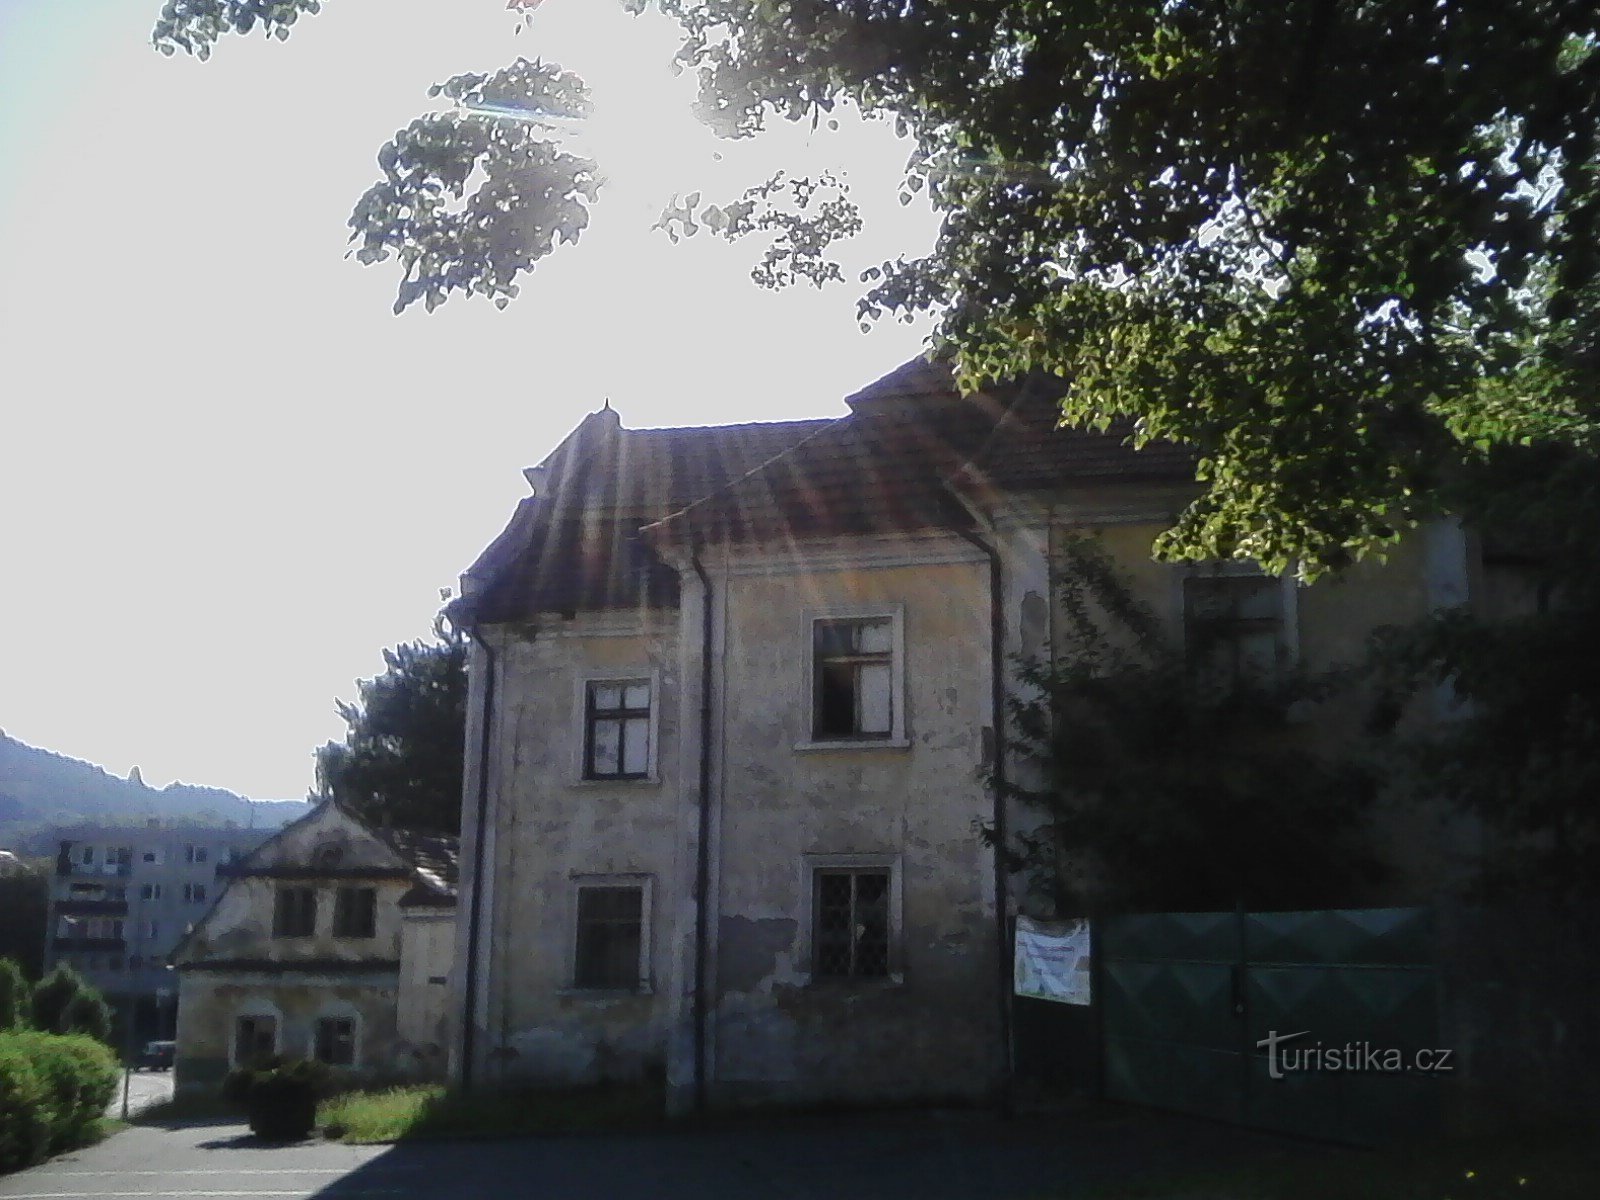 1. Новый замок Голосице. Первоначально дом бургомистра Вотице Вита Паскеки с 1614 года.